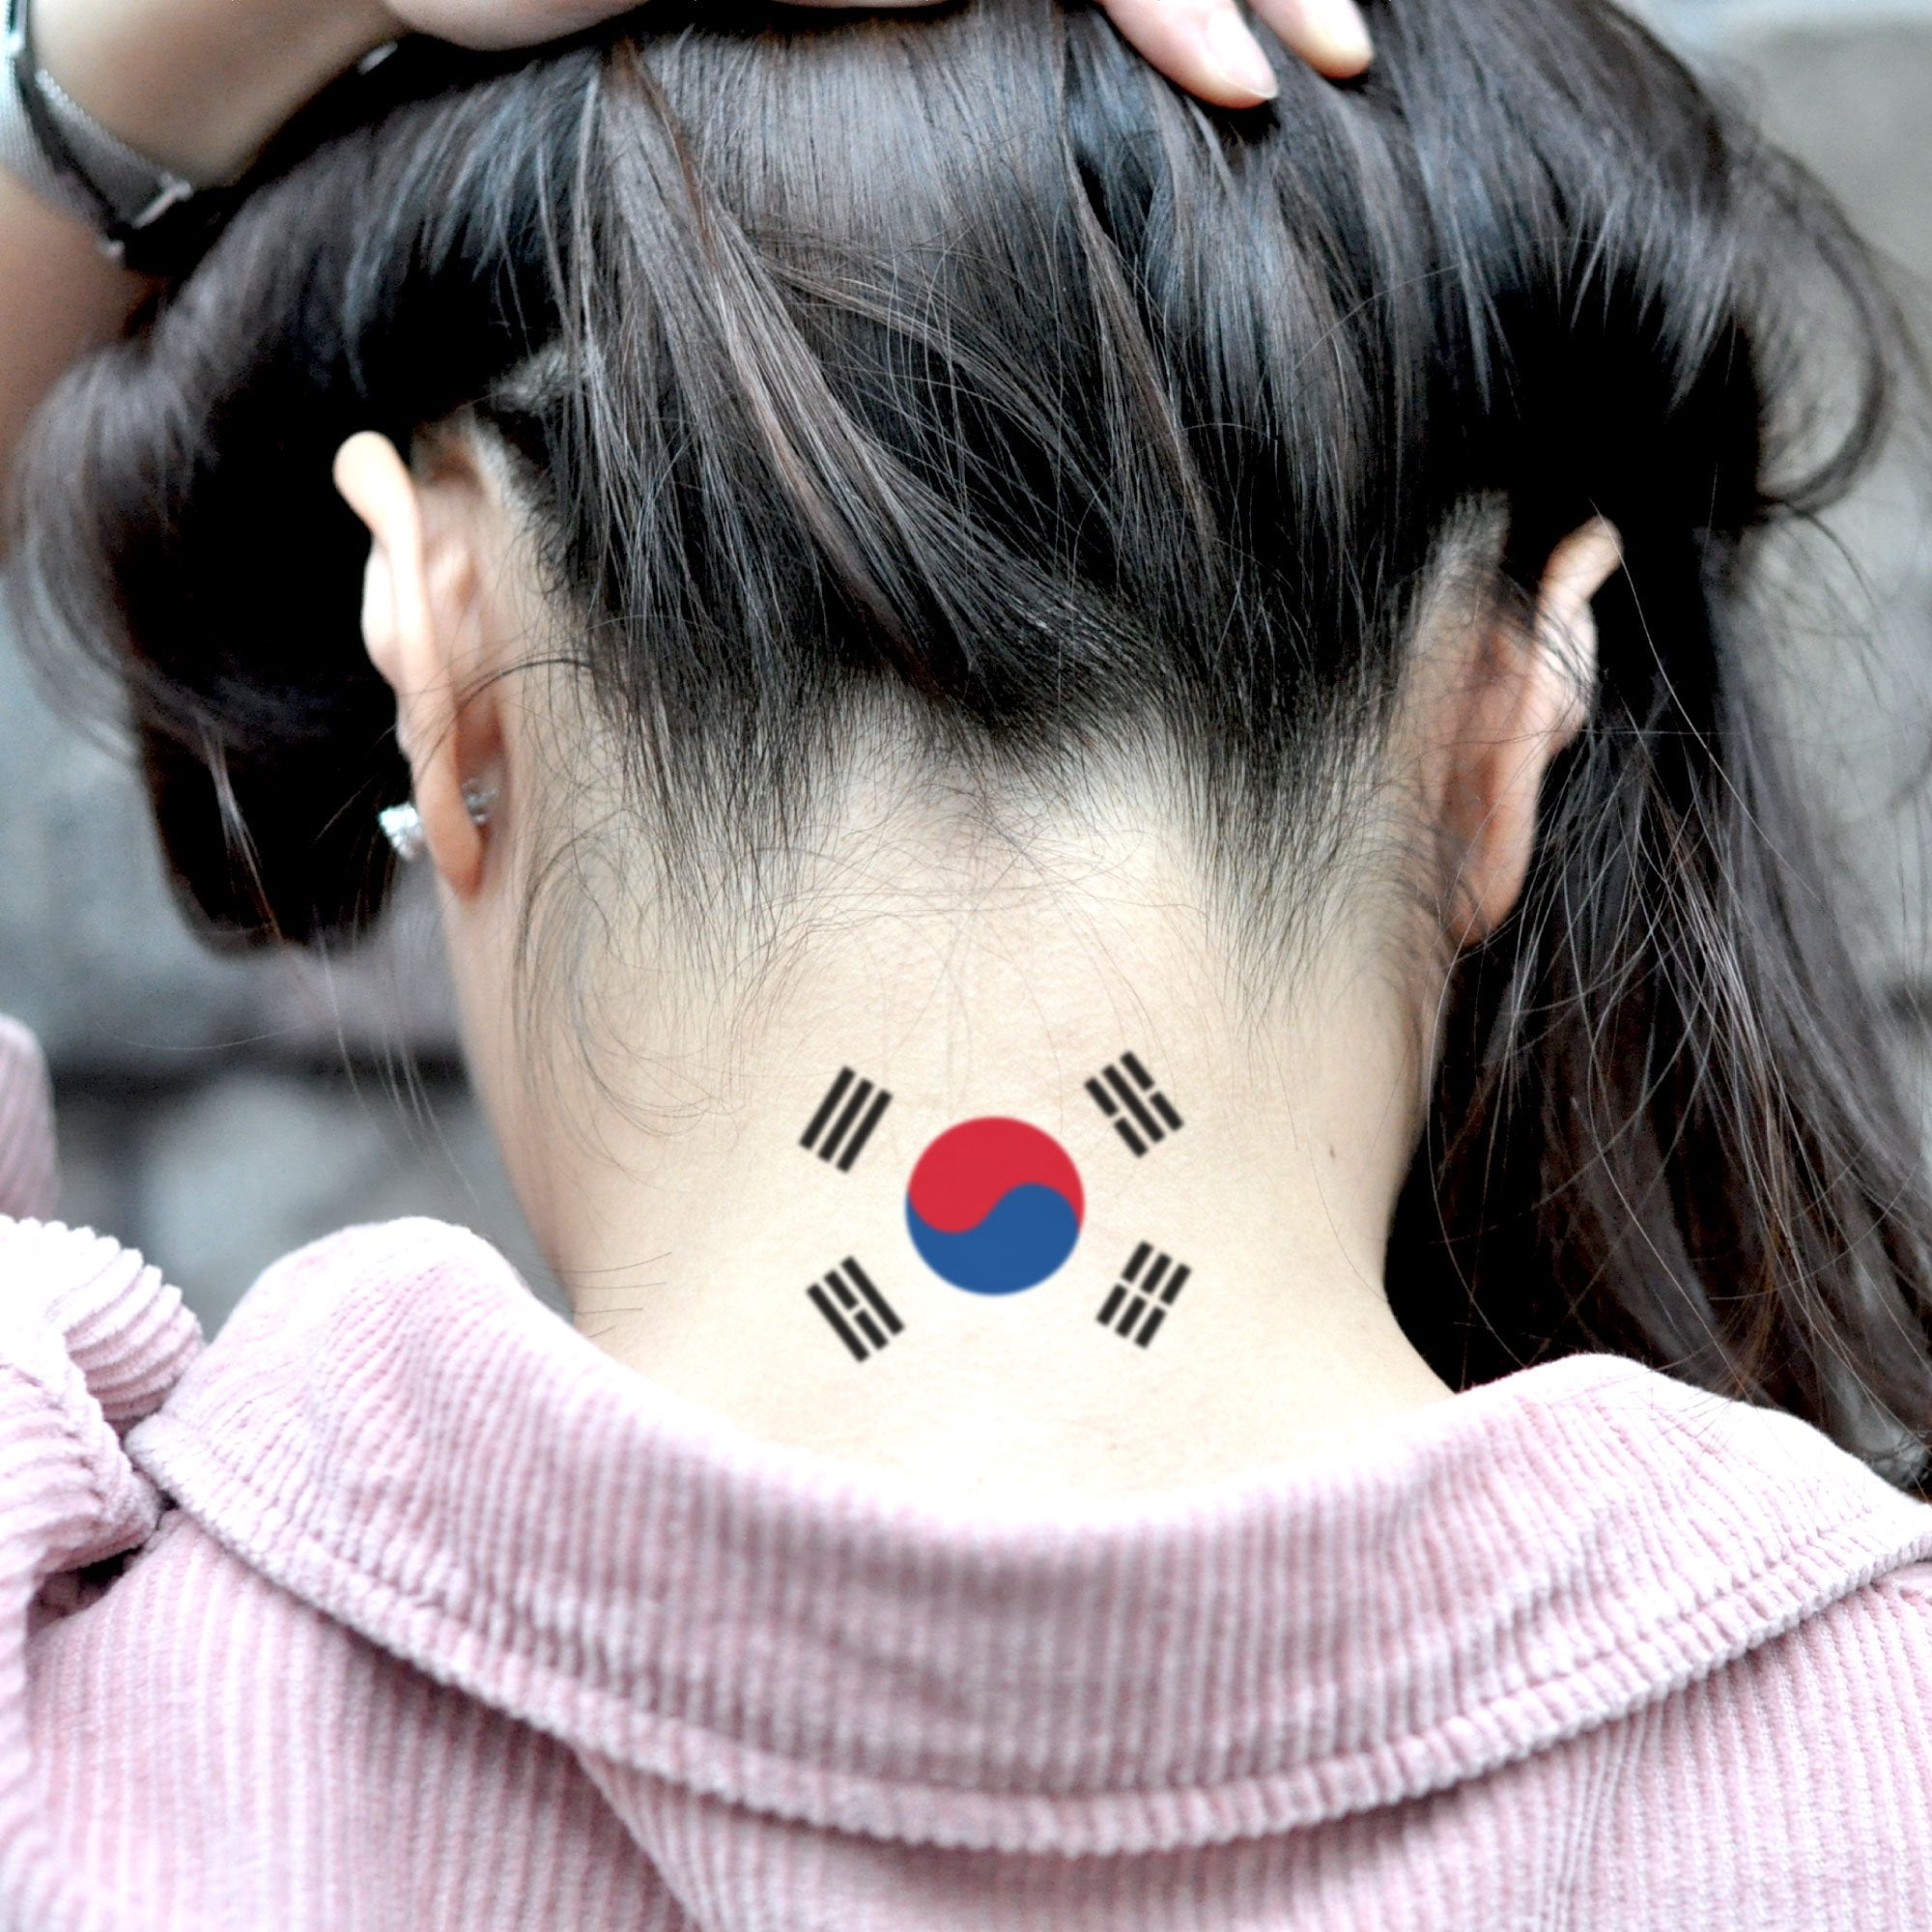 Korean flag and name in Korean tattoo